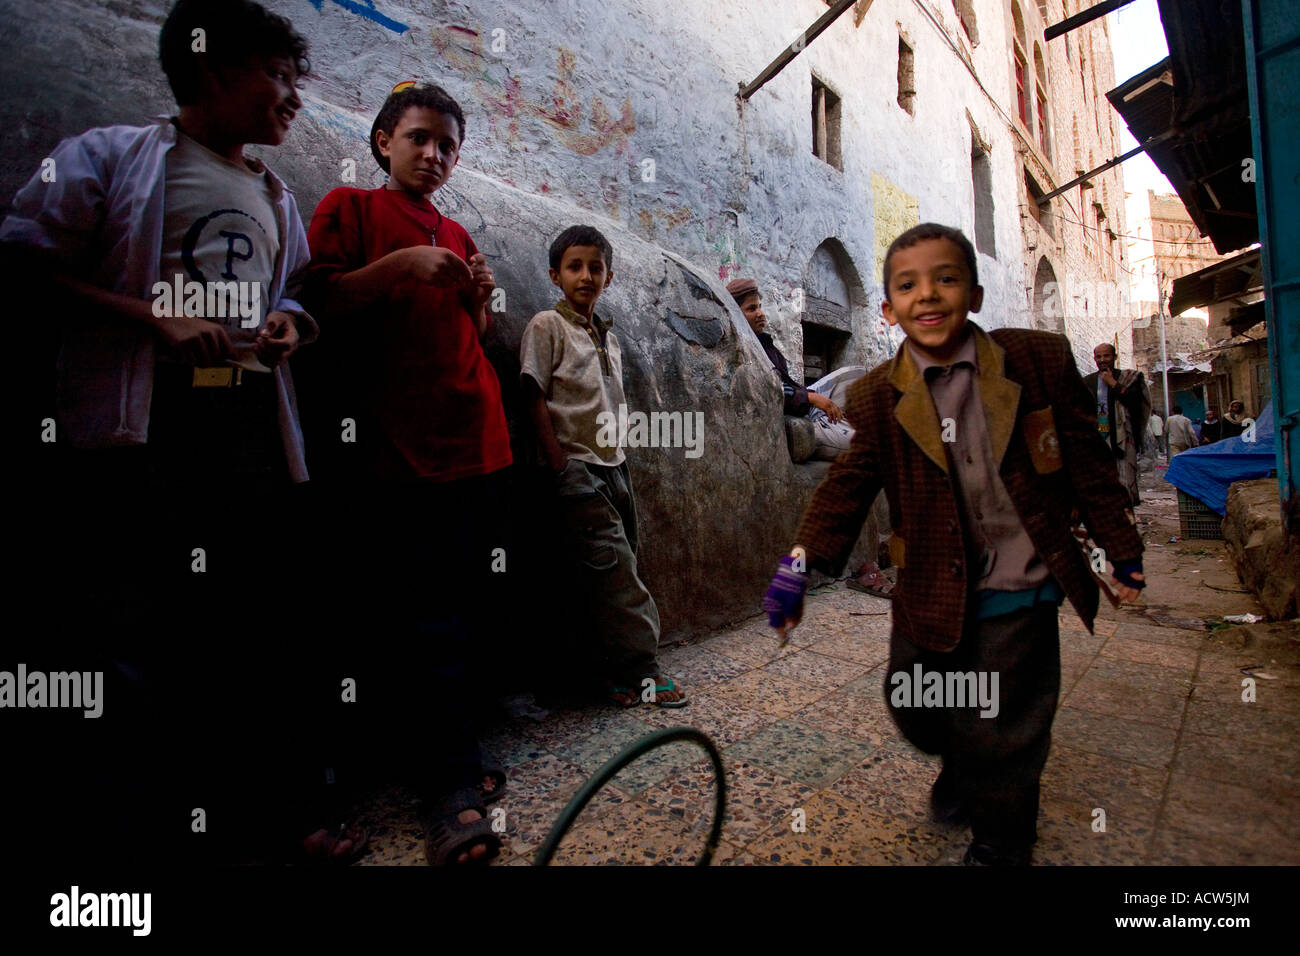 Kinder auf den Straßen von Latakia Bergdorf in der Nähe von Taiz, Jemen Stockfoto